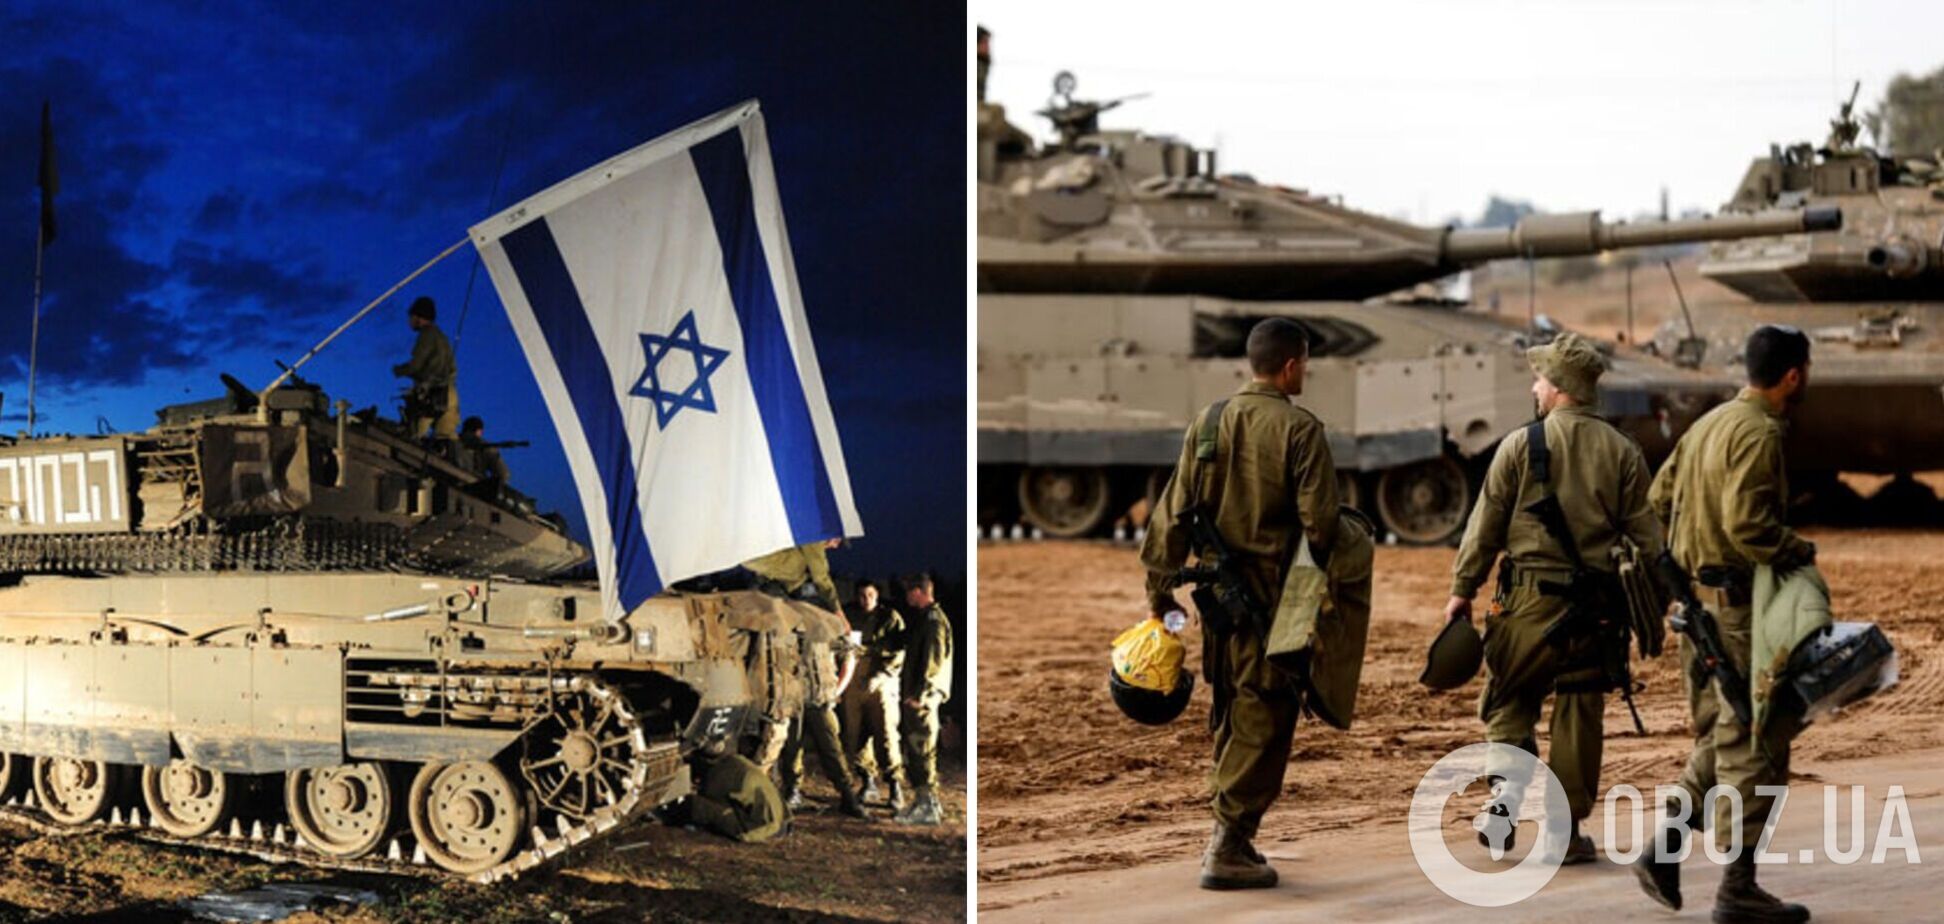 Израиль пригрозил Ирану прямым ответным ударом, если тот нападет с собственной территории: что происходит